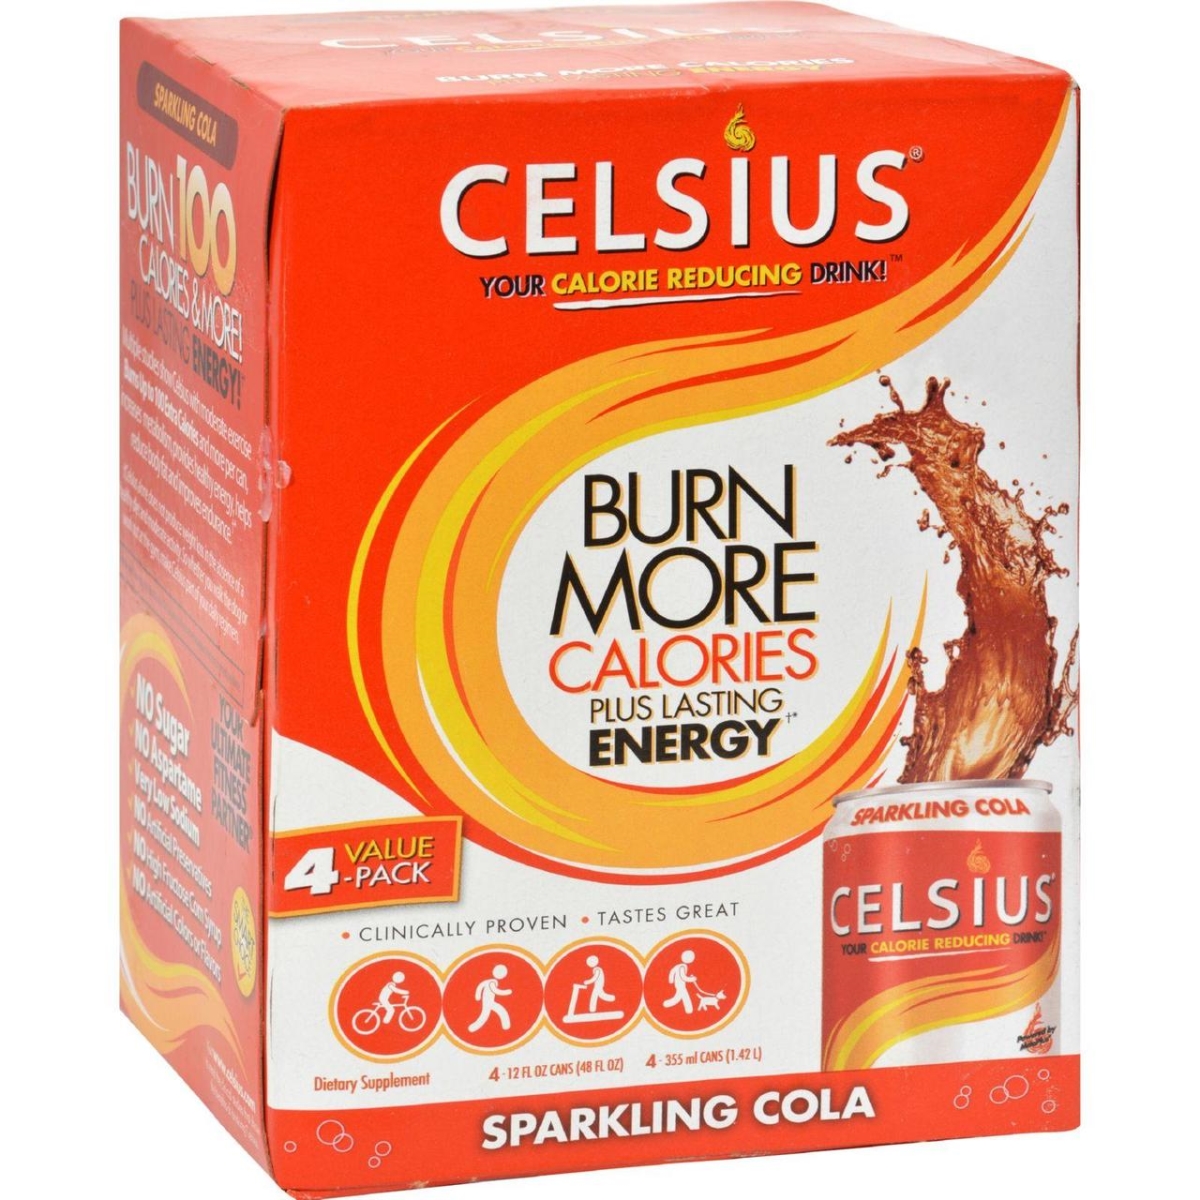 Hg0441006 12 Fl Oz Calorie Burning Drink - Sparkling Cola, Pack Of 4